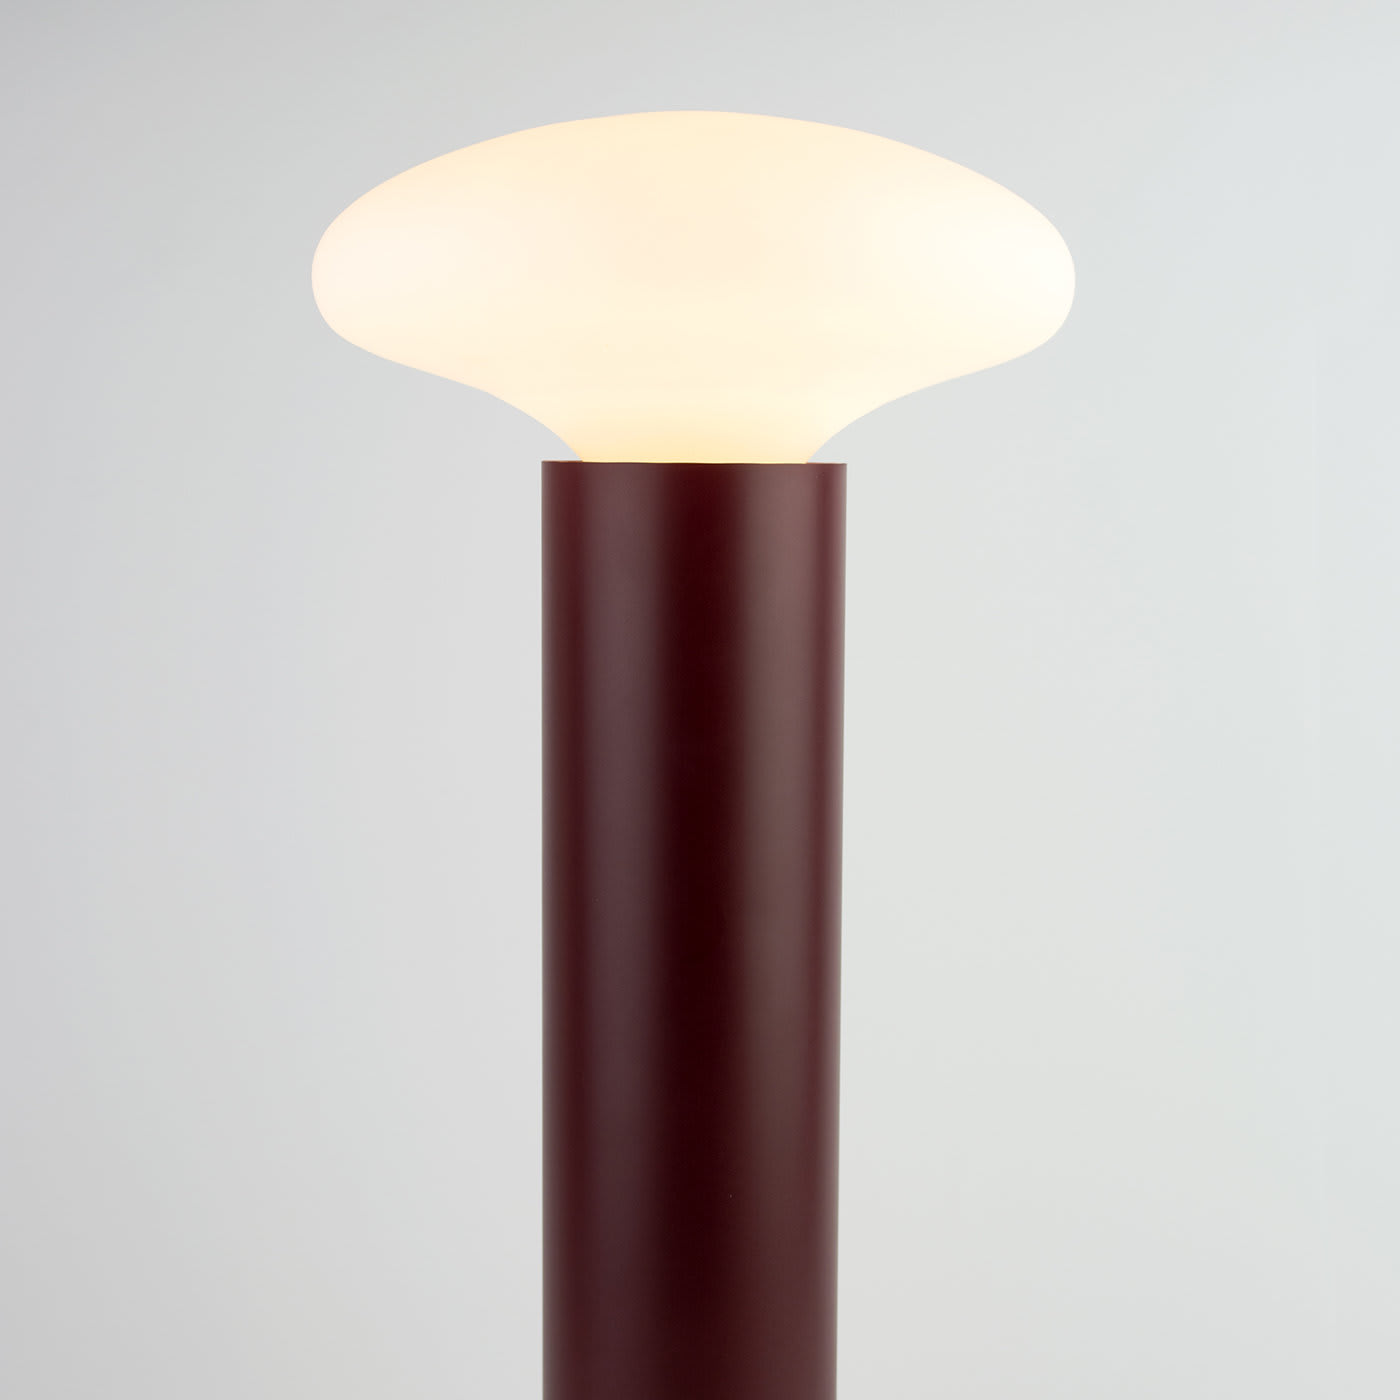 Stem Floor Lamp by Alalda Design - Interia